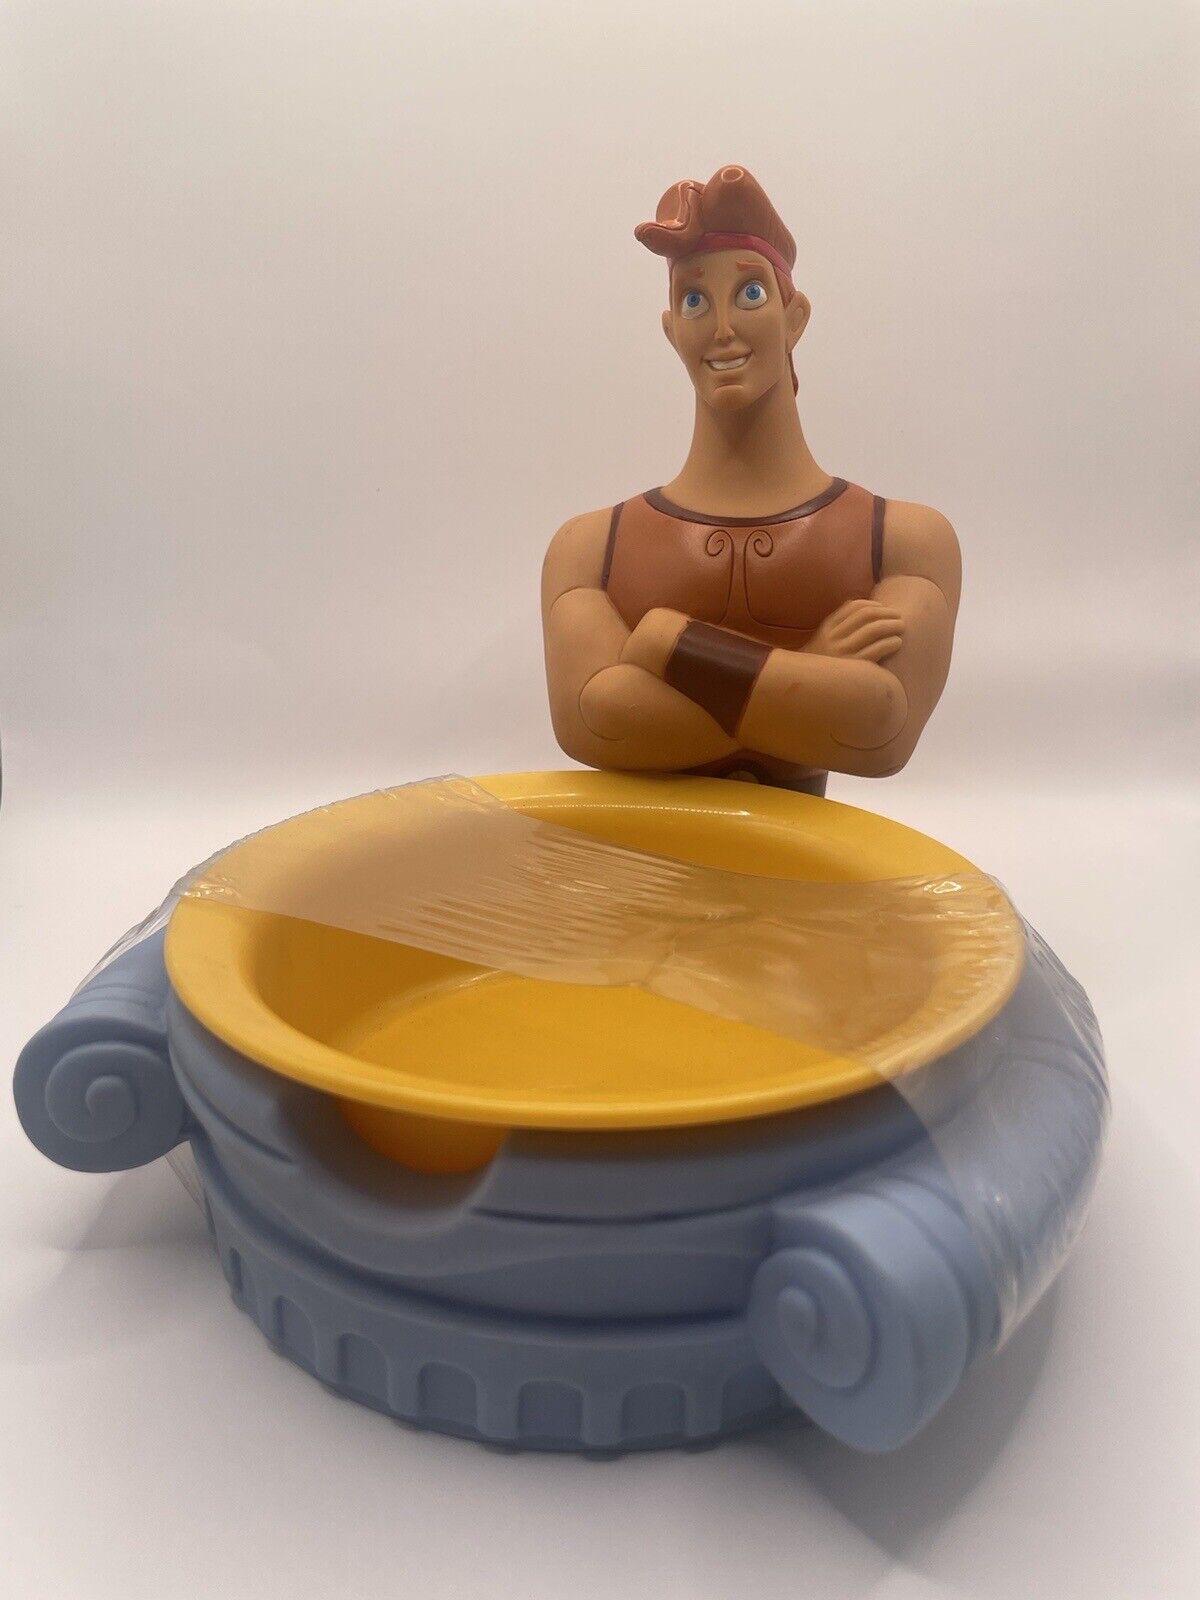 Vintage 1990s Disney ‘Hercules’ Cereal Bowl